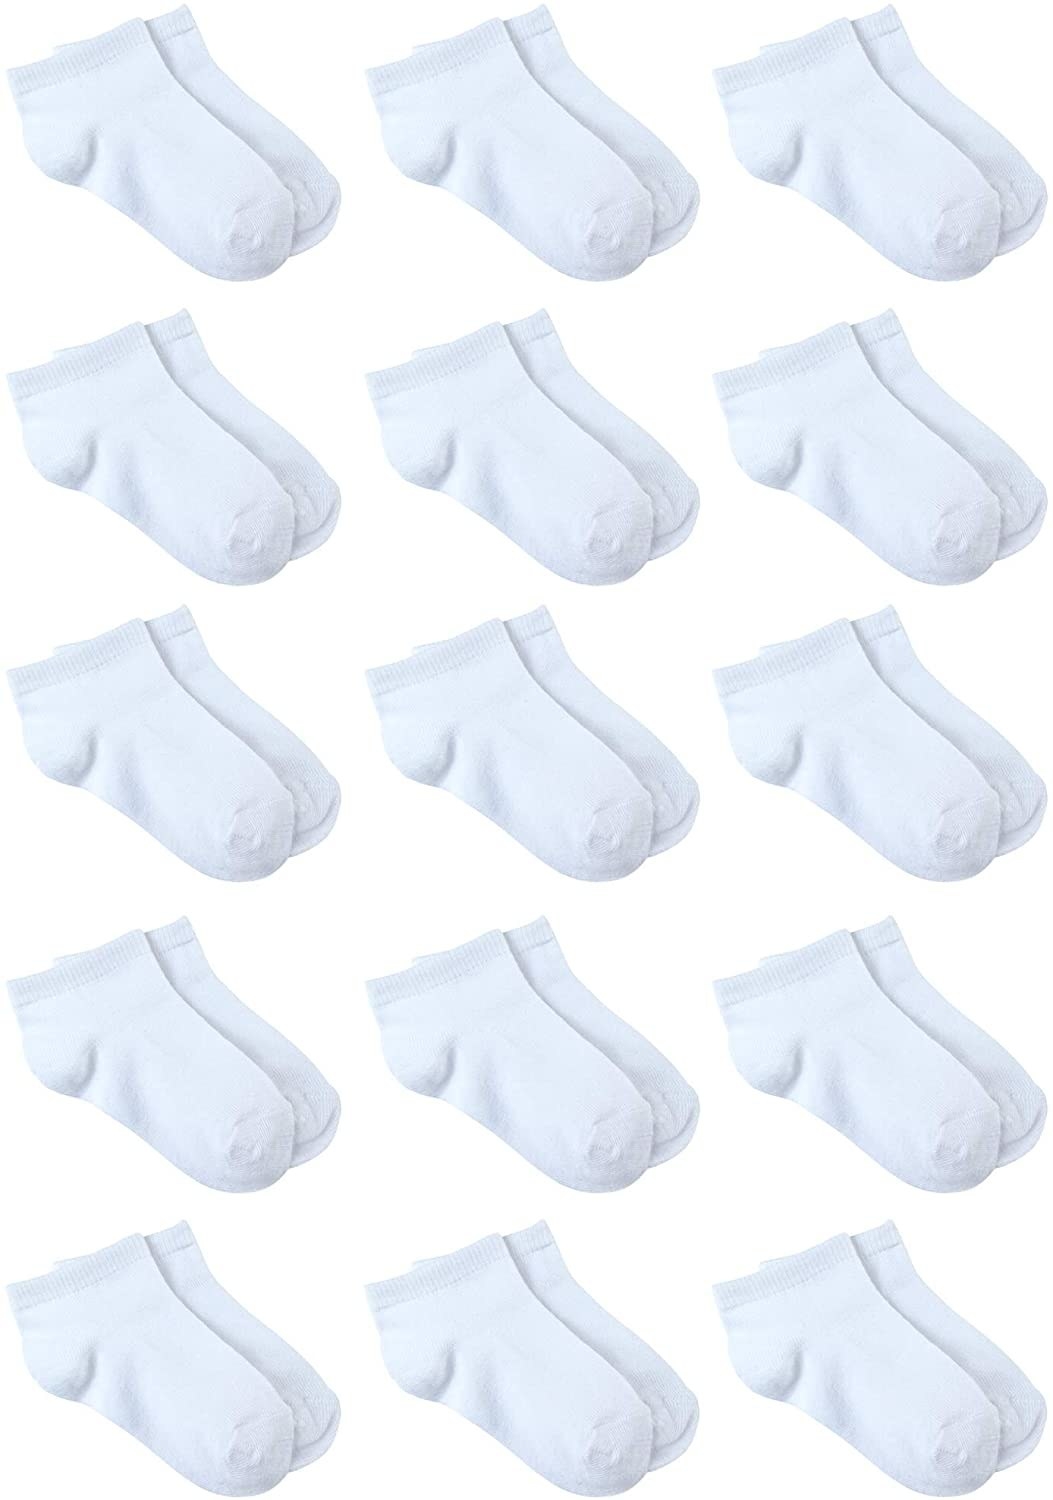 15 pairs of white socks